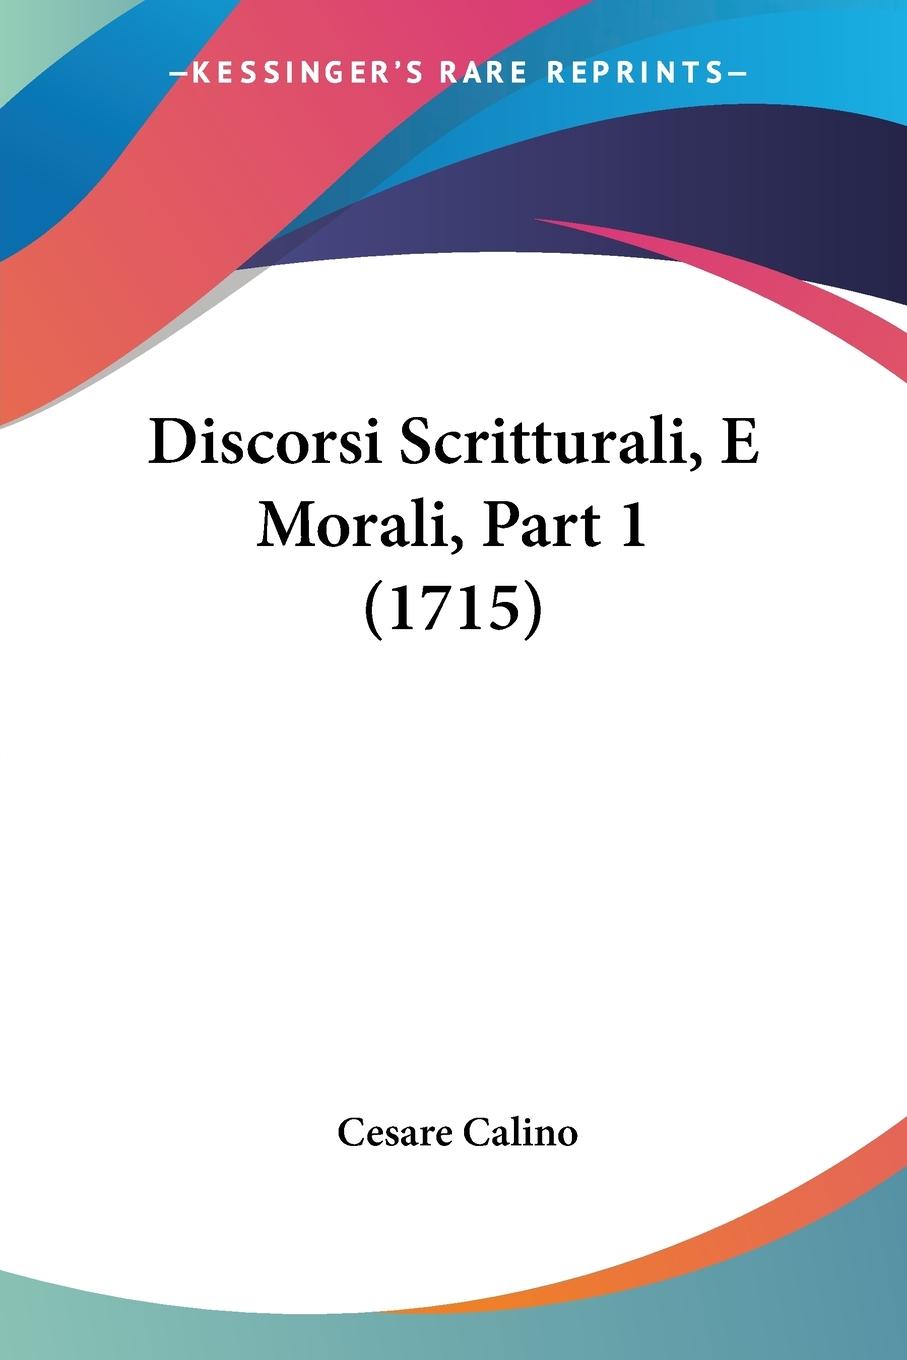 Discorsi Scritturali, E Morali, Part 1 (1715) - Calino, Cesare